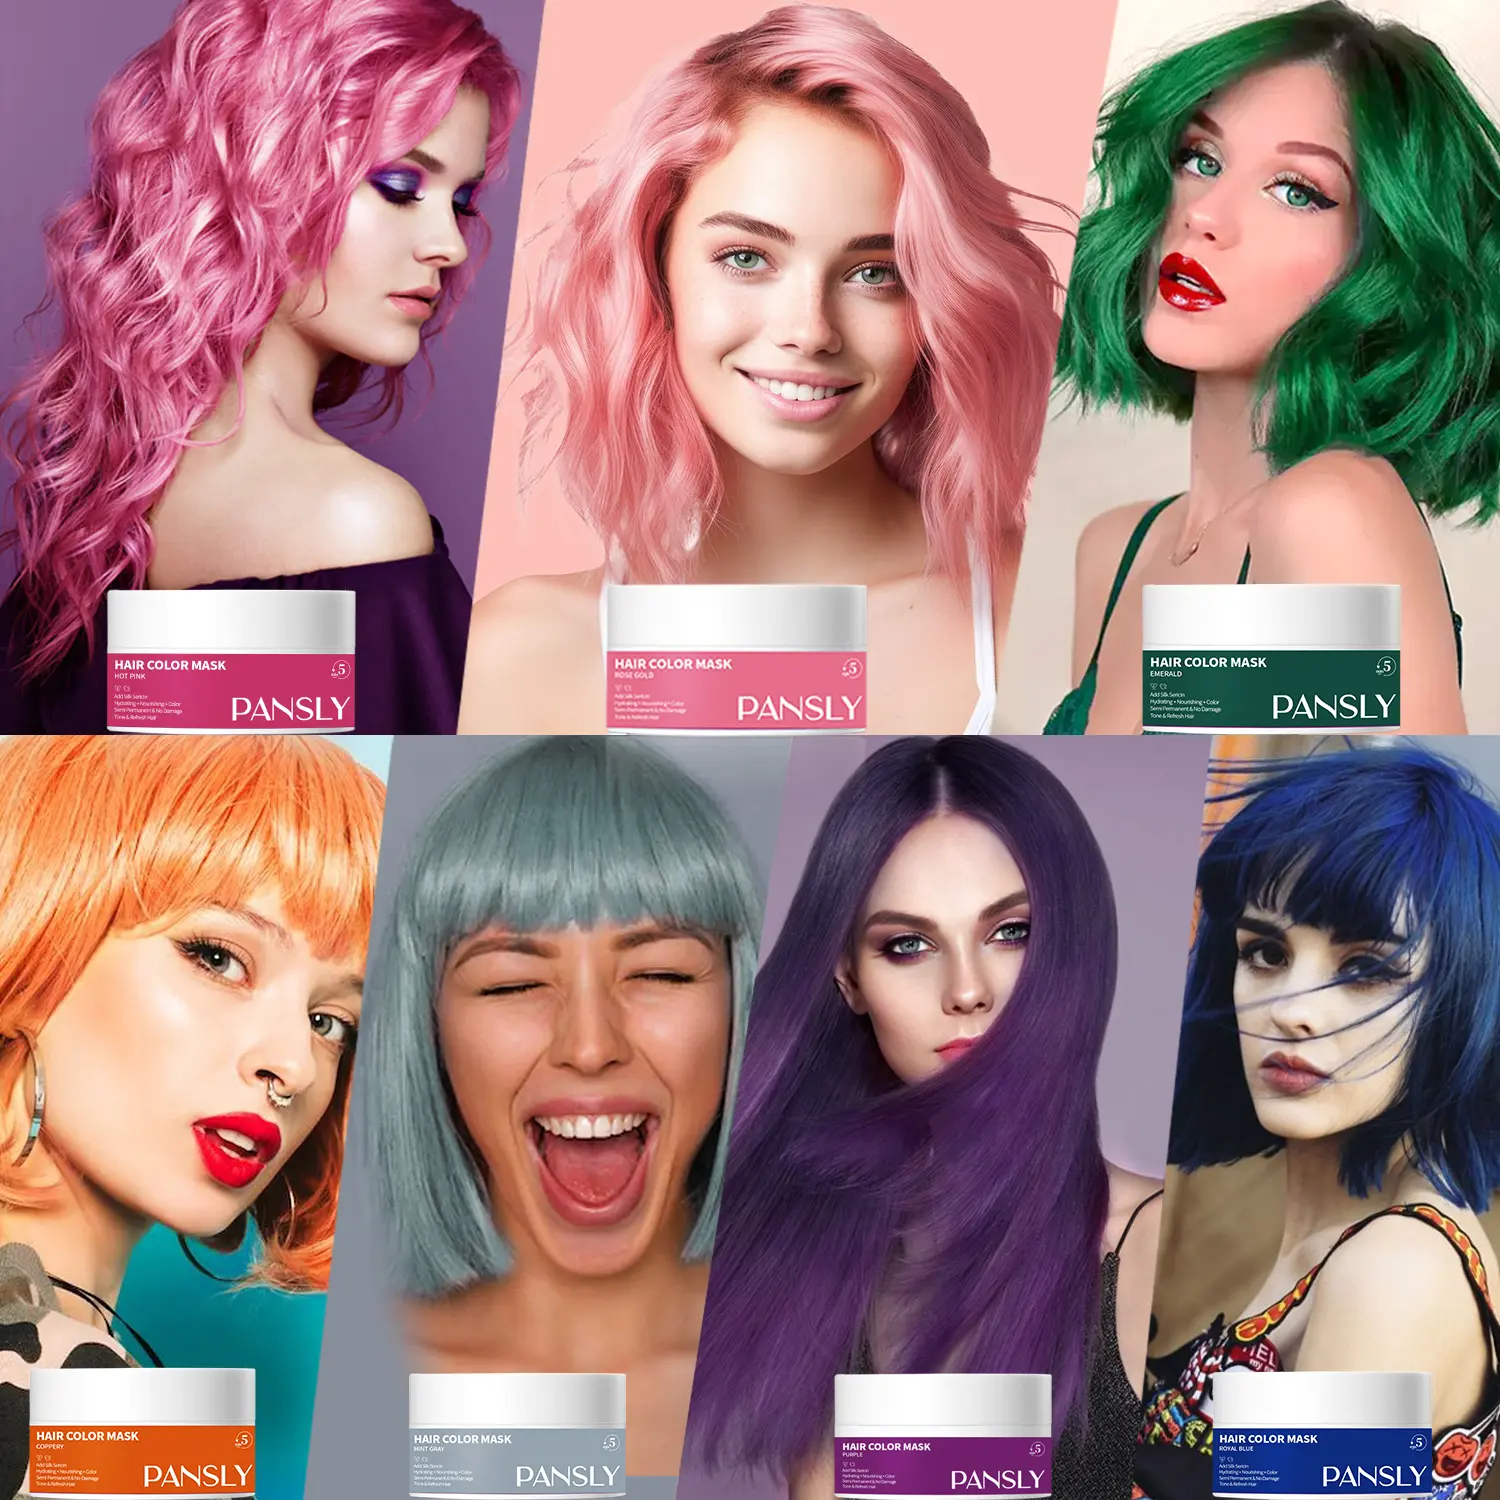 जैविक 7 रंग के बाल मास्क में बदलाव, बालों के रंग की मरम्मत, बालों के रंग की मरम्मत के लिए बाल मास्क